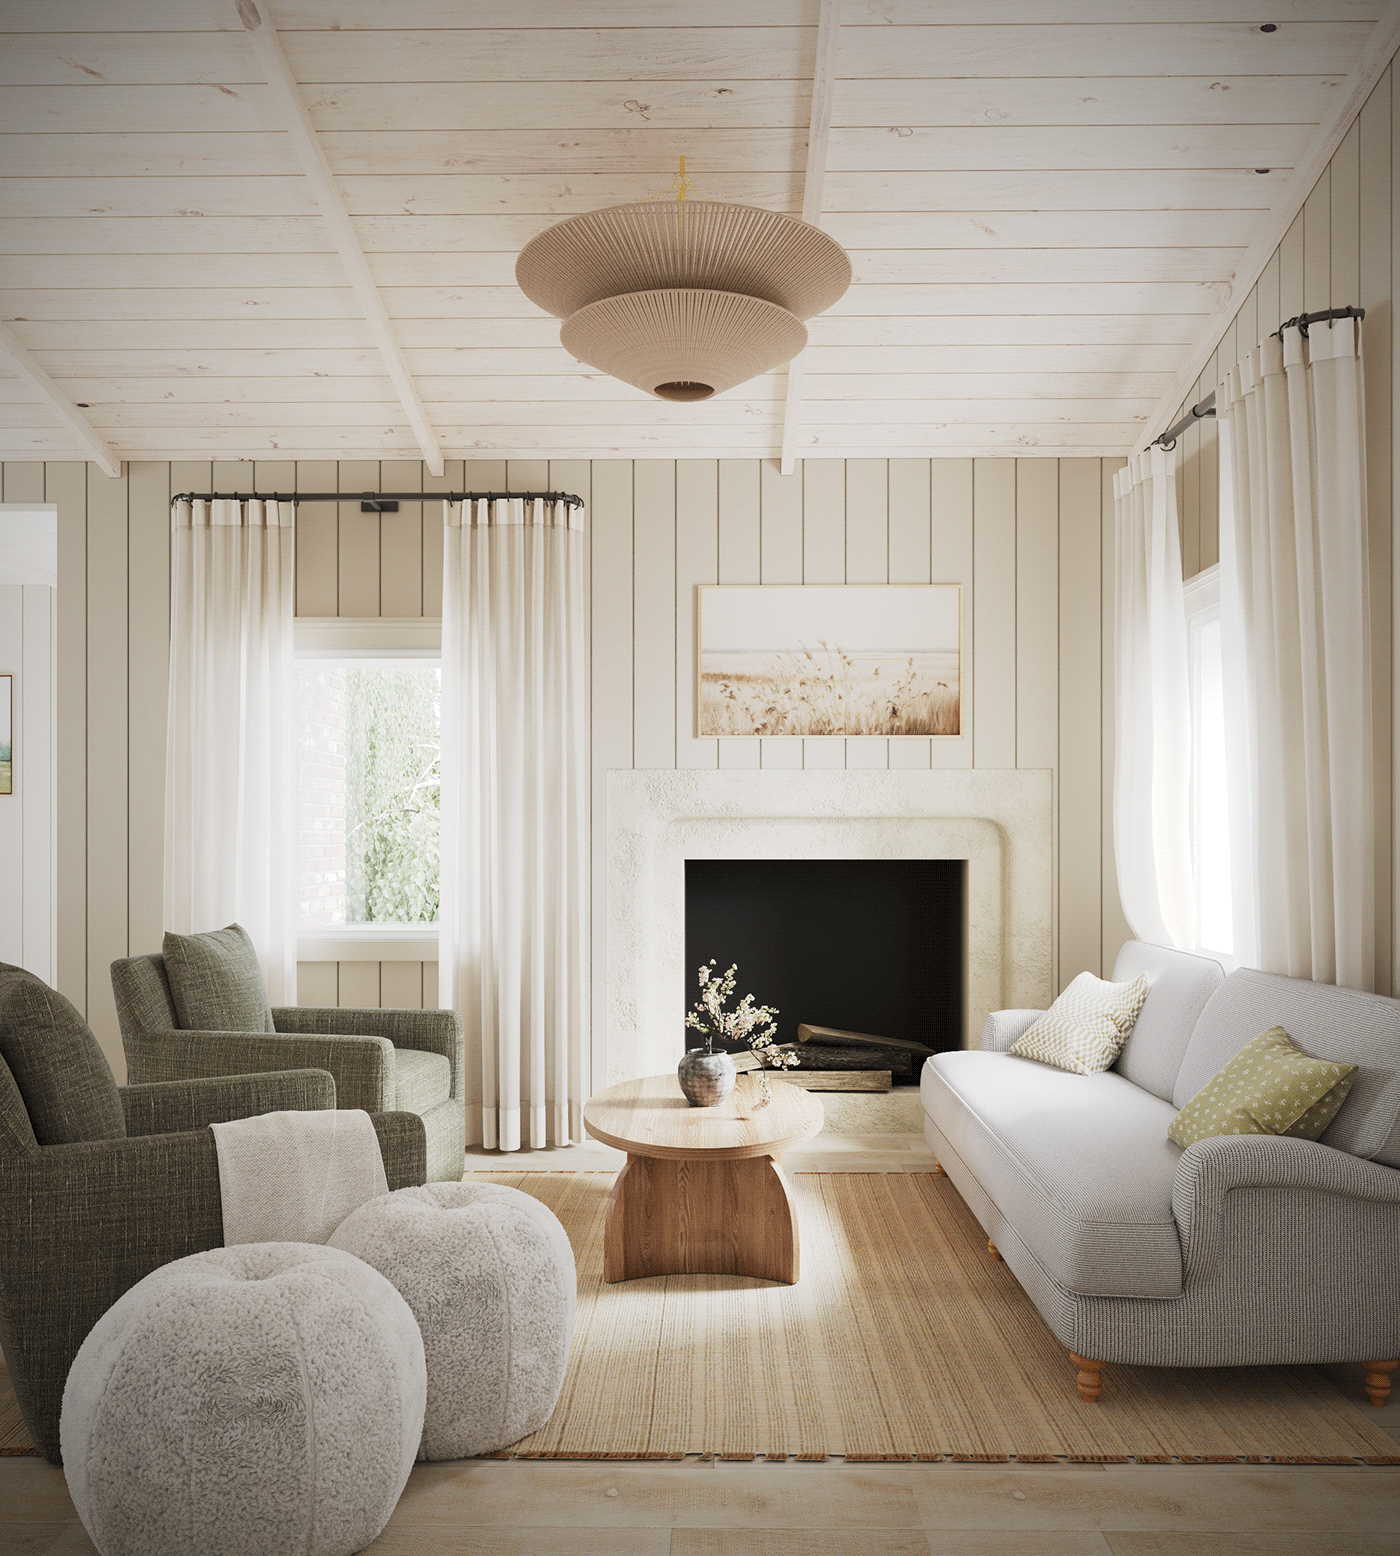 indoor architecture visualization interior design  modern Render 3ds max corona archviz CGI